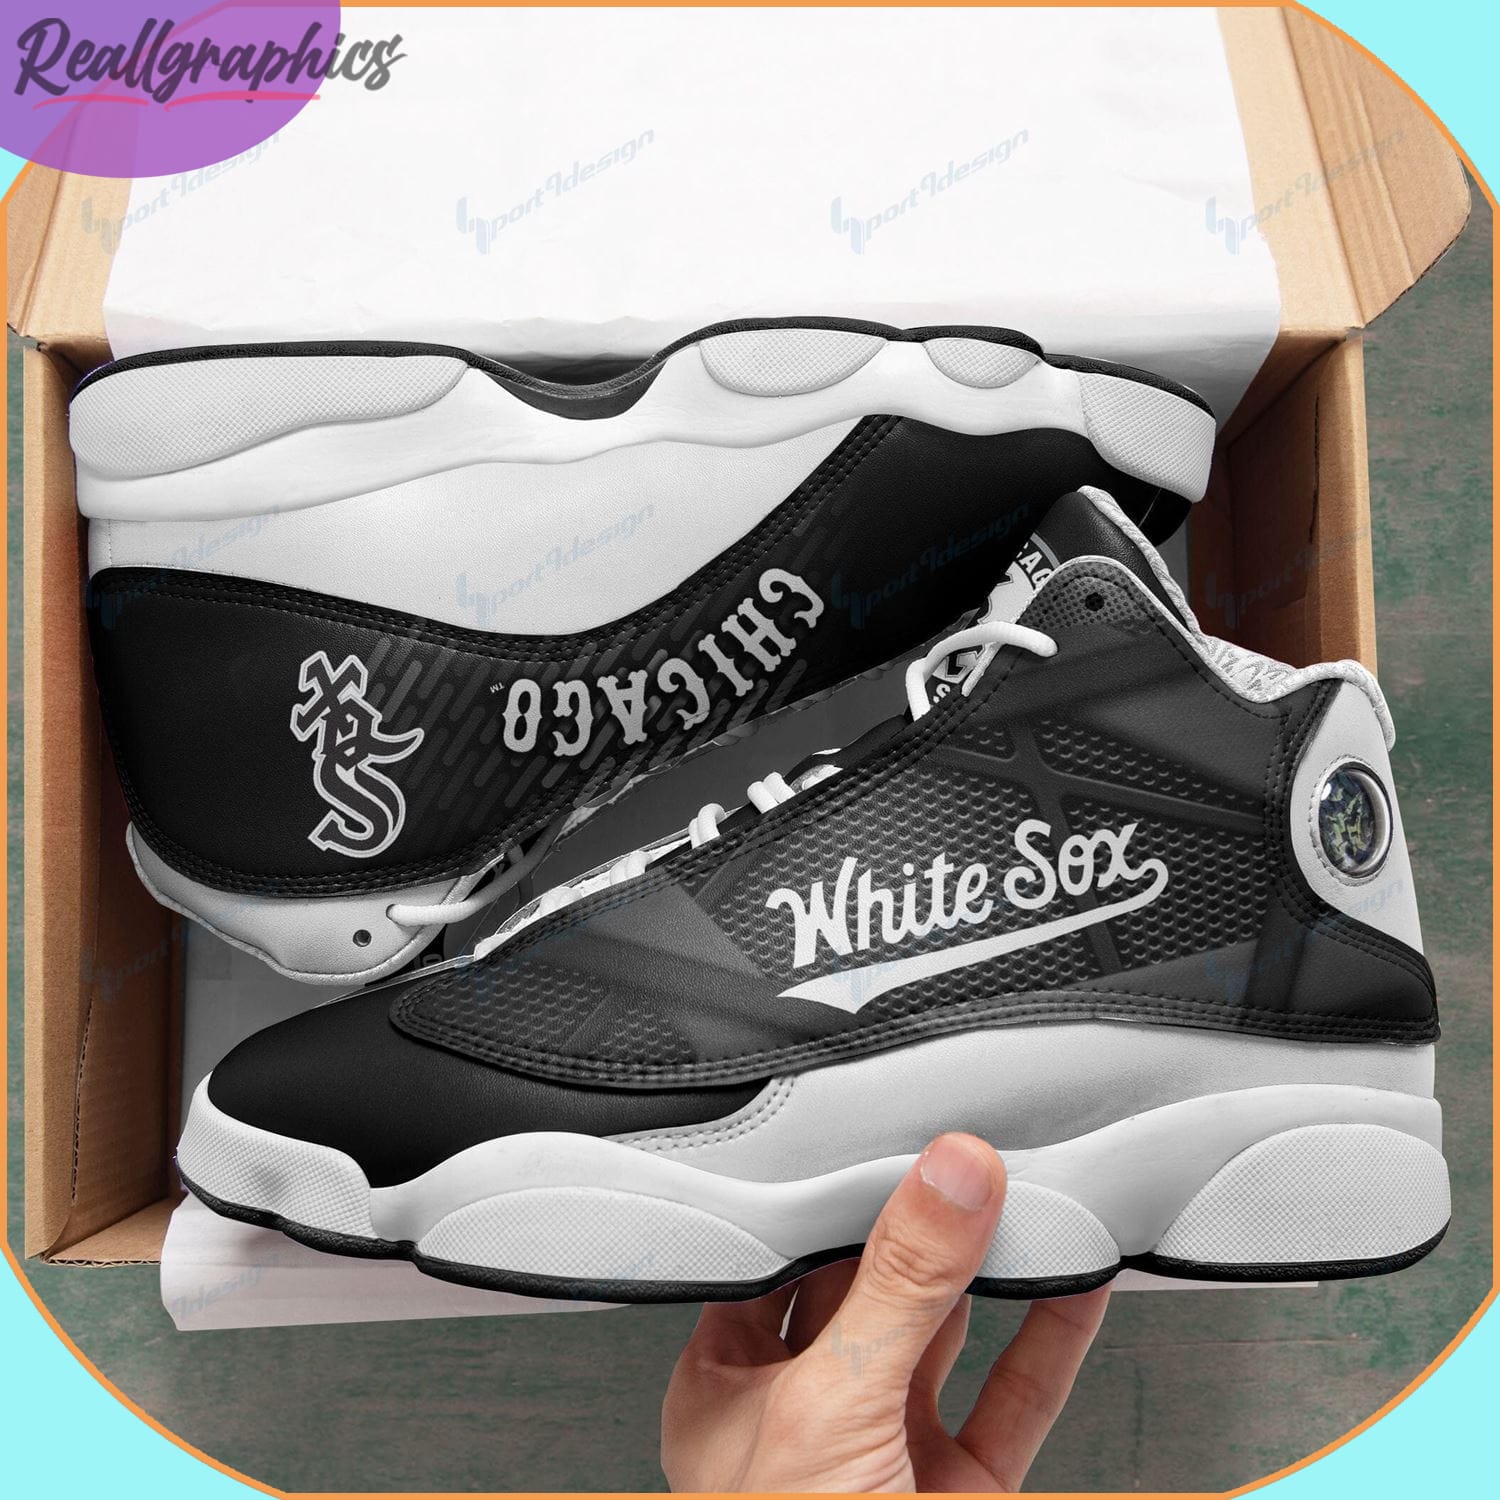 chicago white sox air jordan 13 sneakers, white sox mlb custom gift for fans